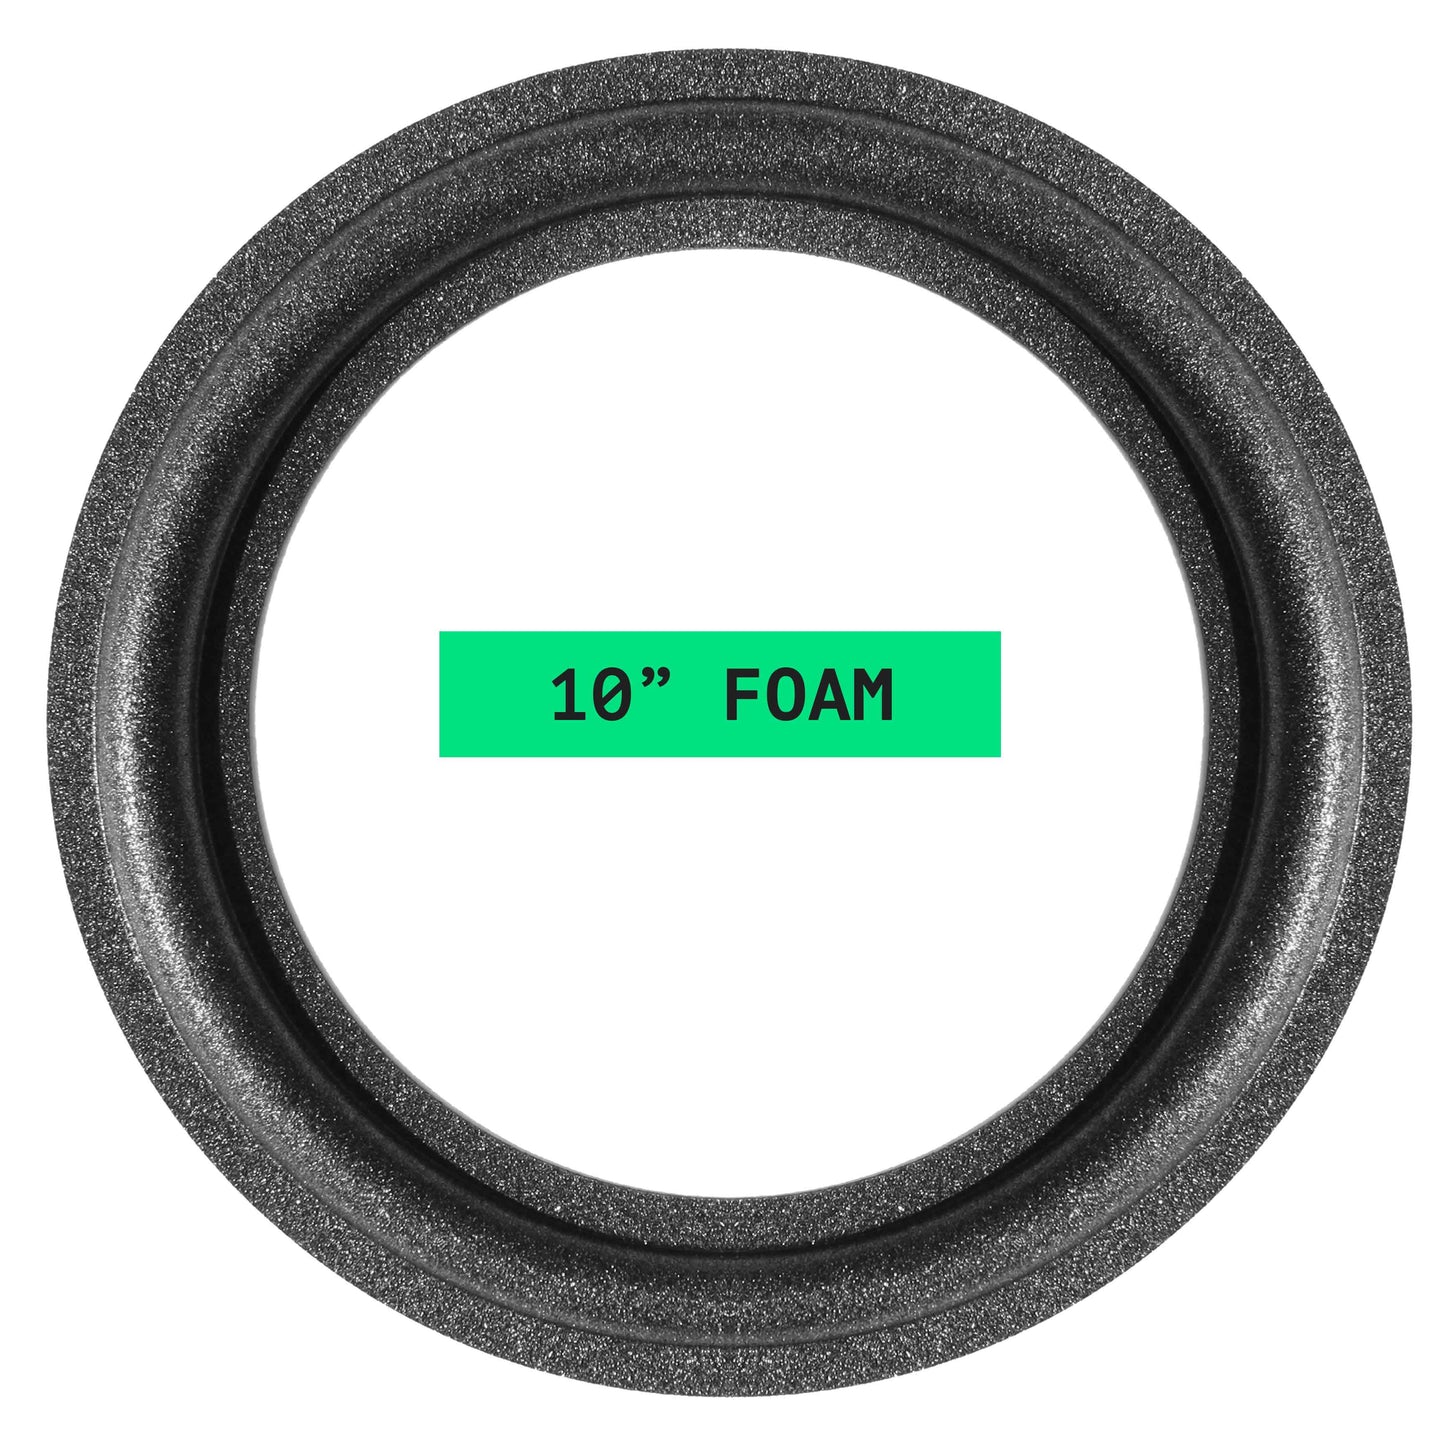 Bang & Olufsen 10" Foam Repair Kit